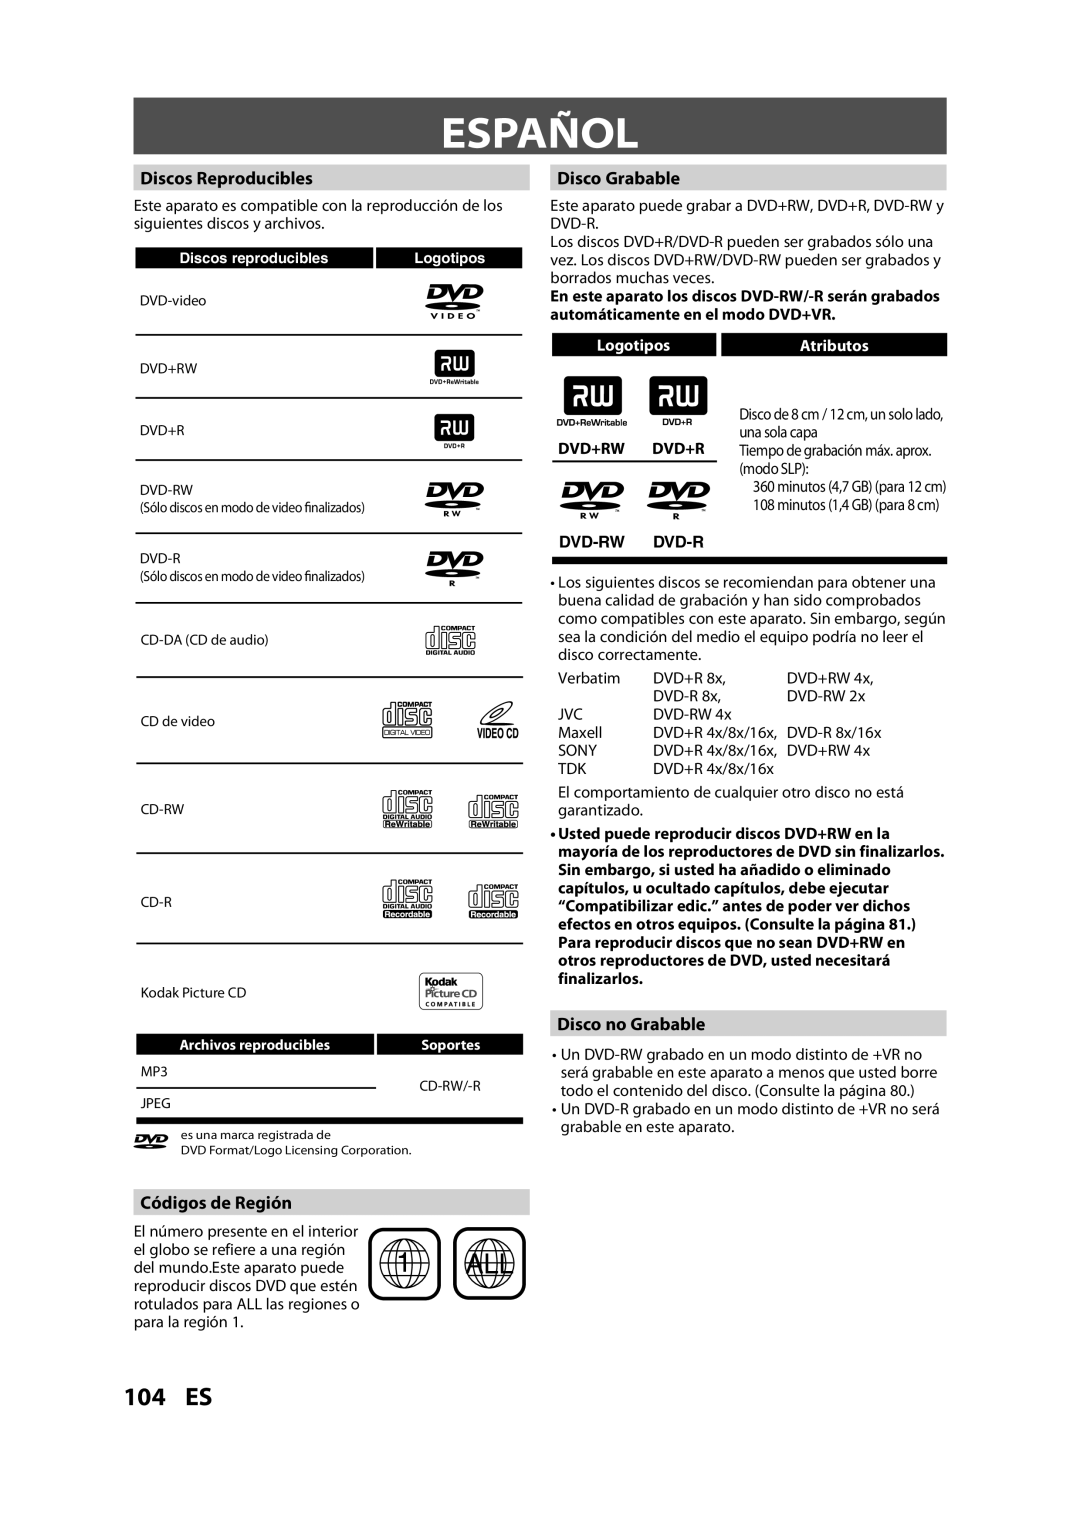 FUNAI ZV457MG9 A Español, 104 ES, Discos Reproducibles, Disco Grabable, Disco no Grabable, Códigos de Región, Dvd+Rw Dvd+R 